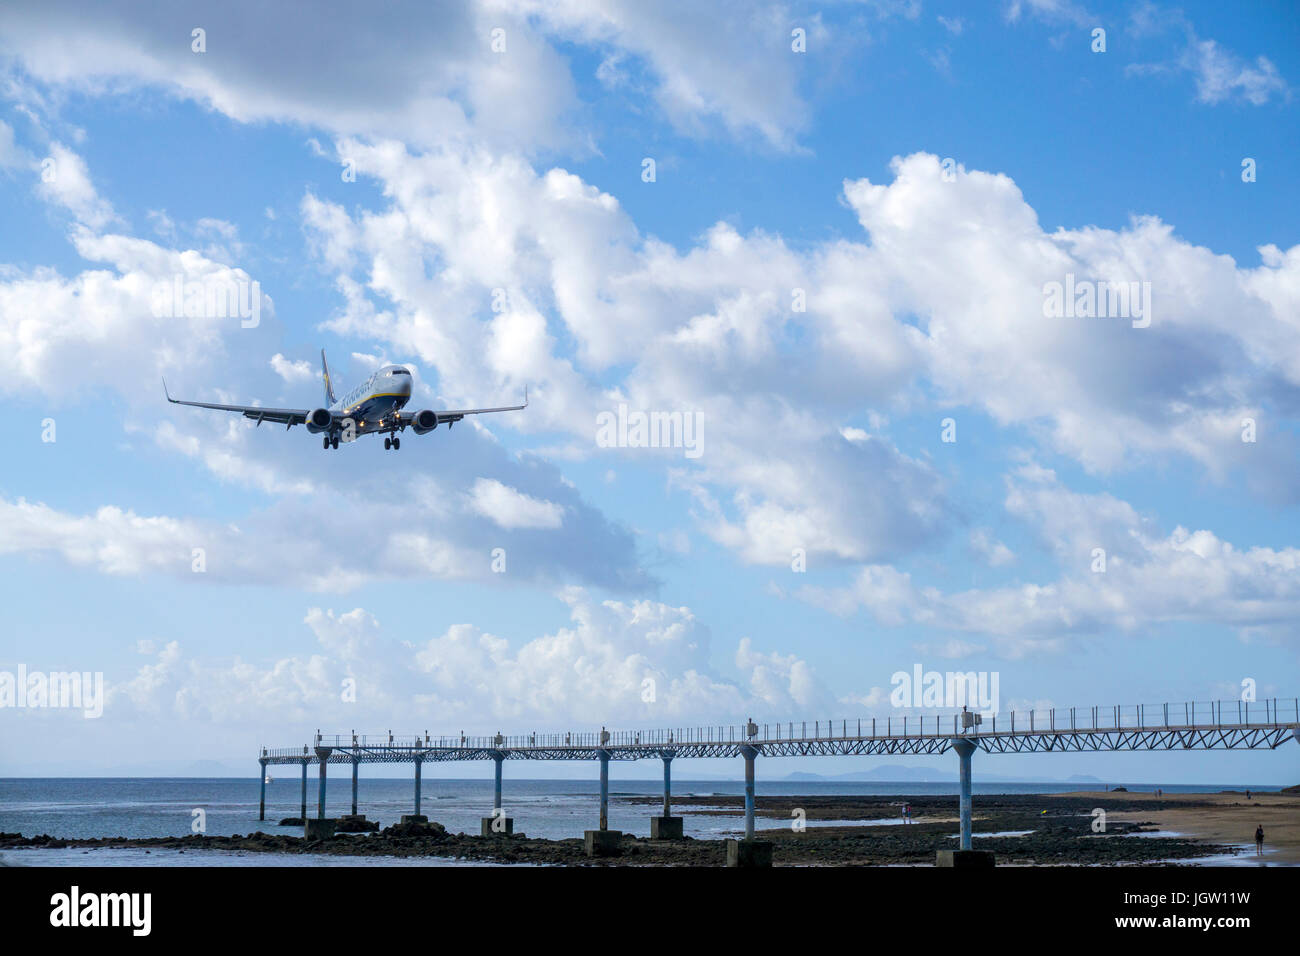 Ryanair beim Landeanflug auf den Flughafen Lanzarote, Ryanair landing at airport, Lanzarote island, Canary islands, Spain Stock Photo